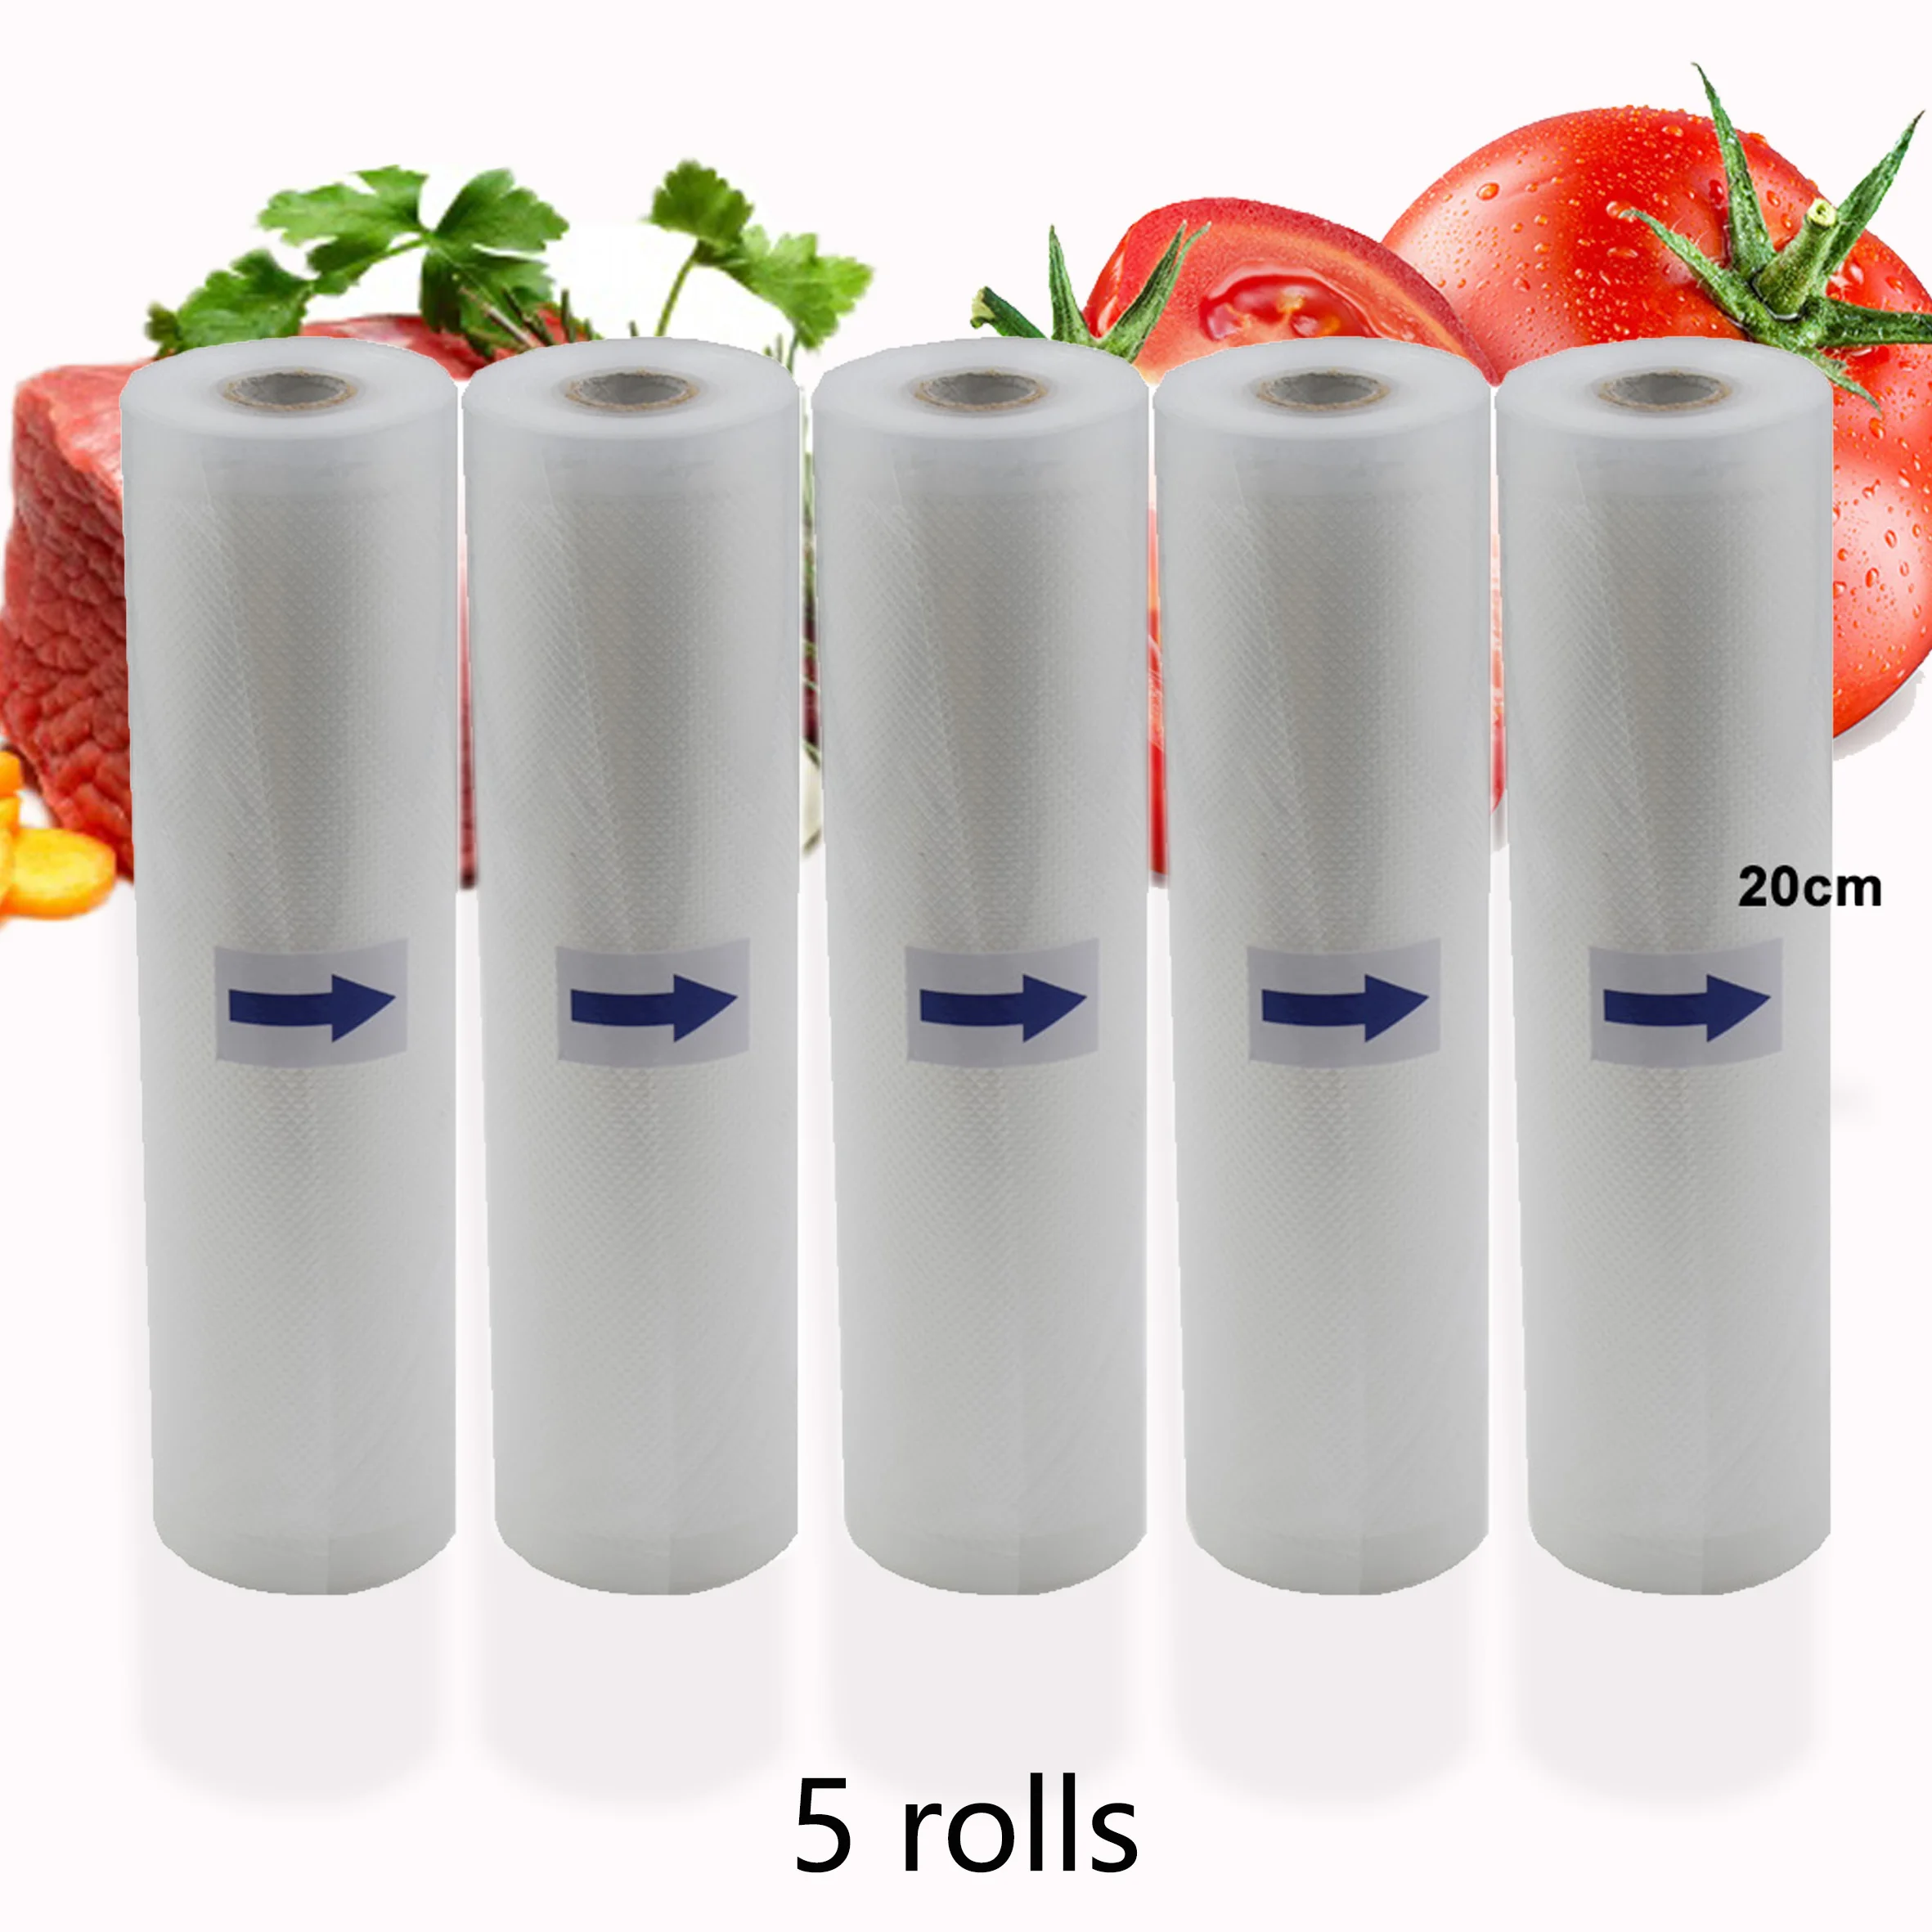 Storage bags for food vacuum bag sealer rolls for vacuum 